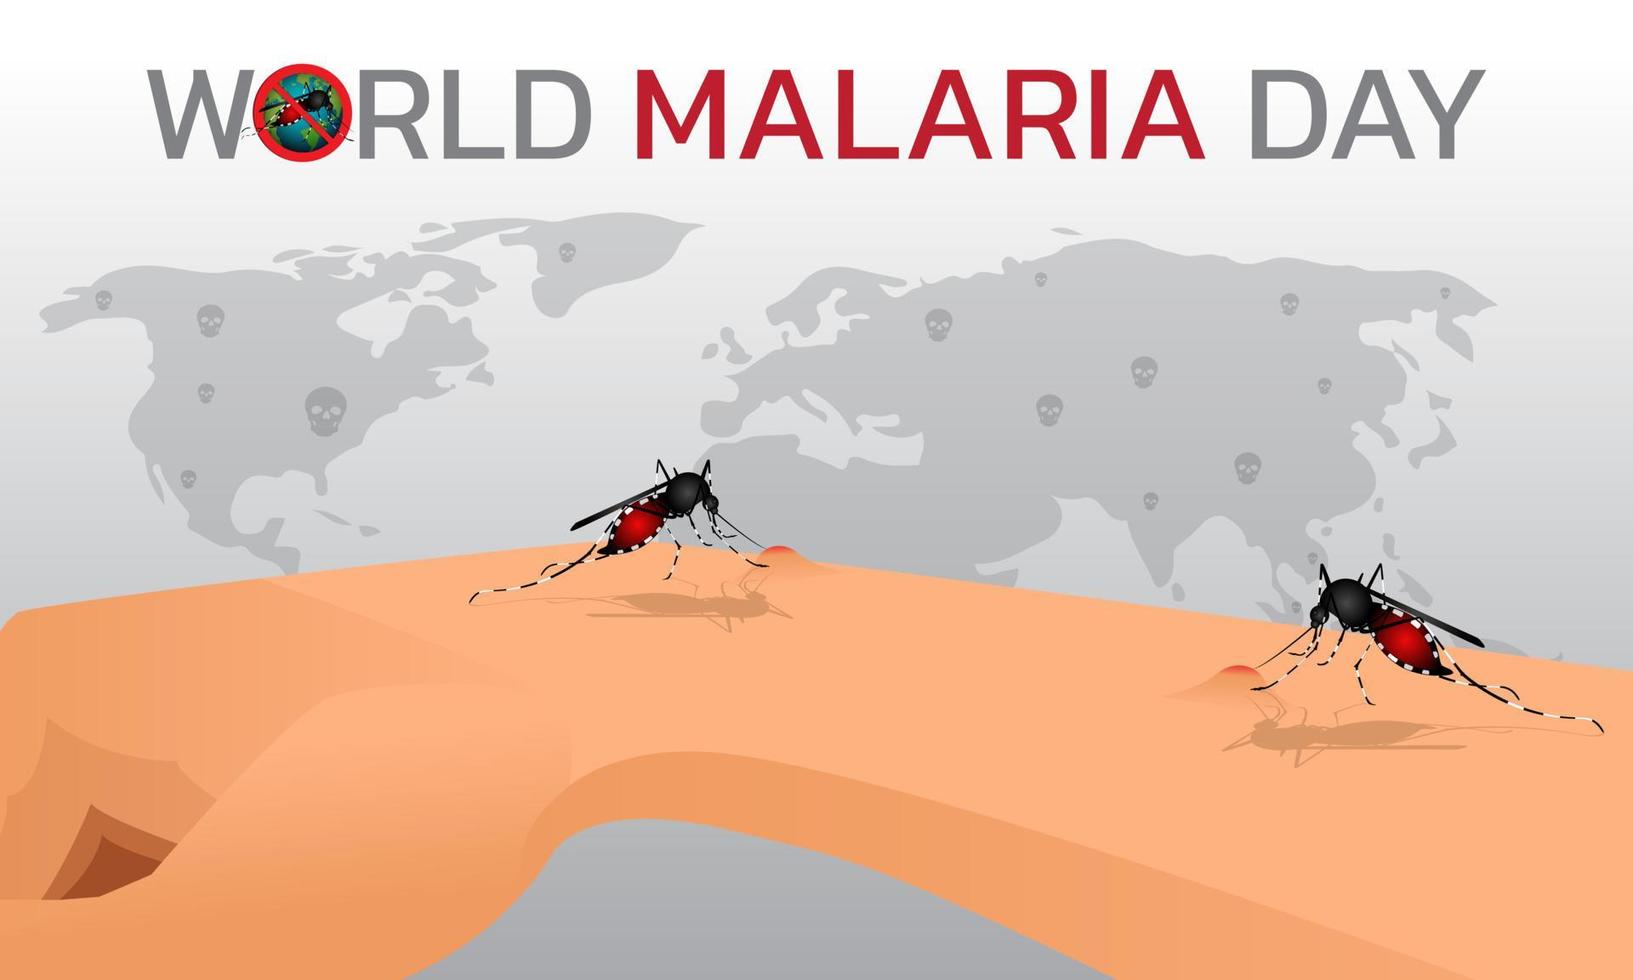 conception du concept de la journée mondiale du paludisme pour la journée du paludisme. vecteur